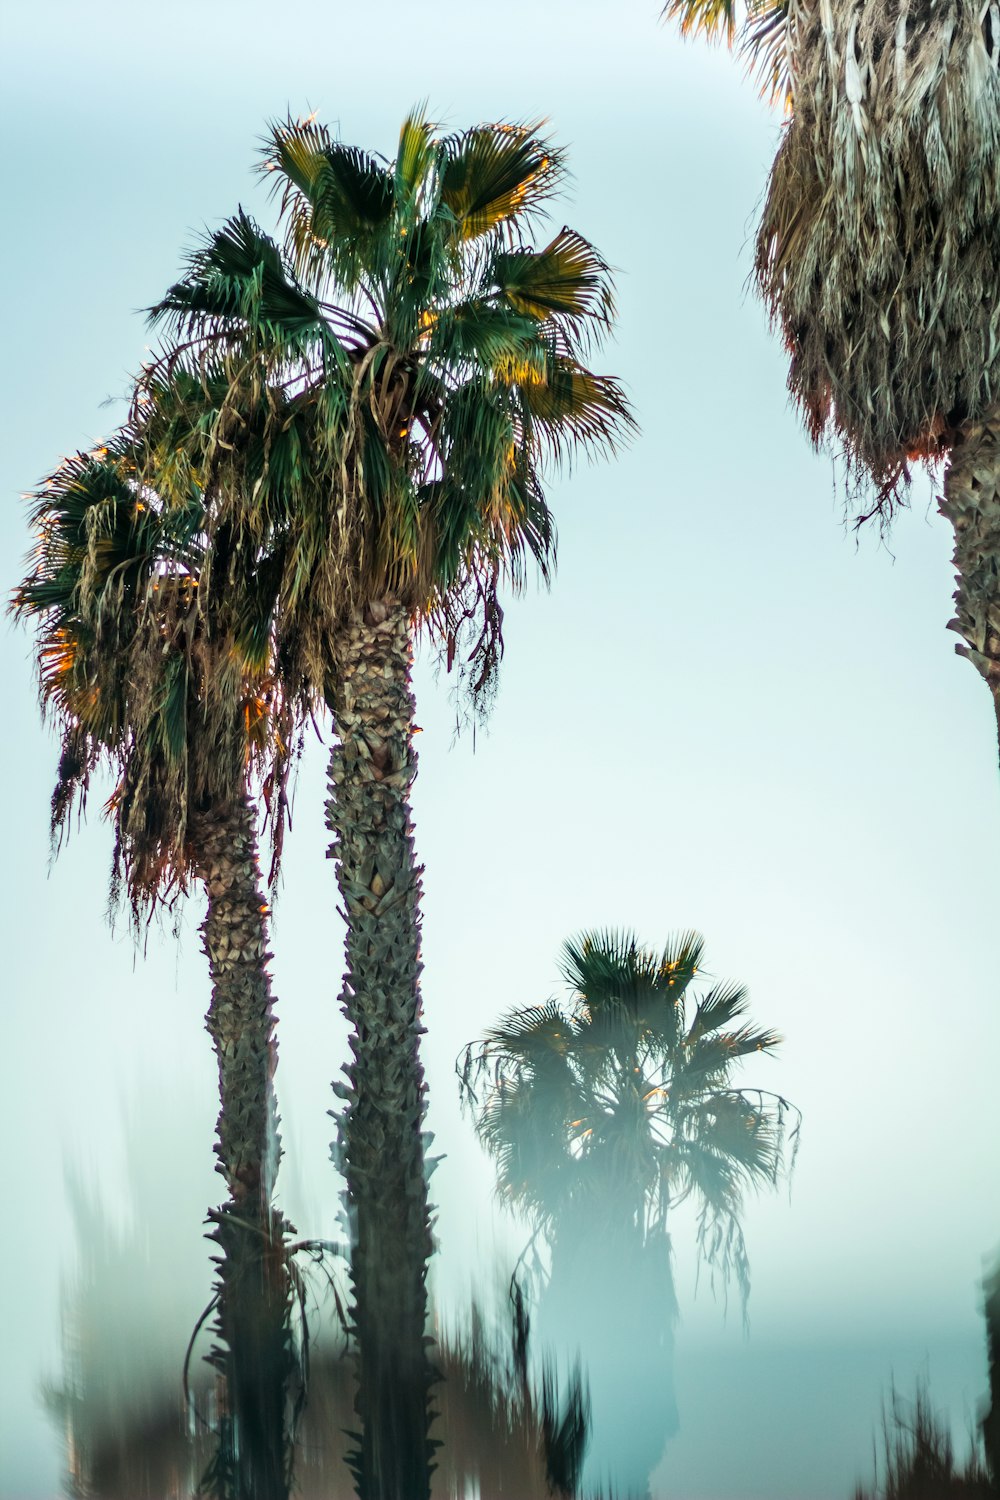 Photographie en contre-plongée de palmiers verts sous le ciel bleu de jour